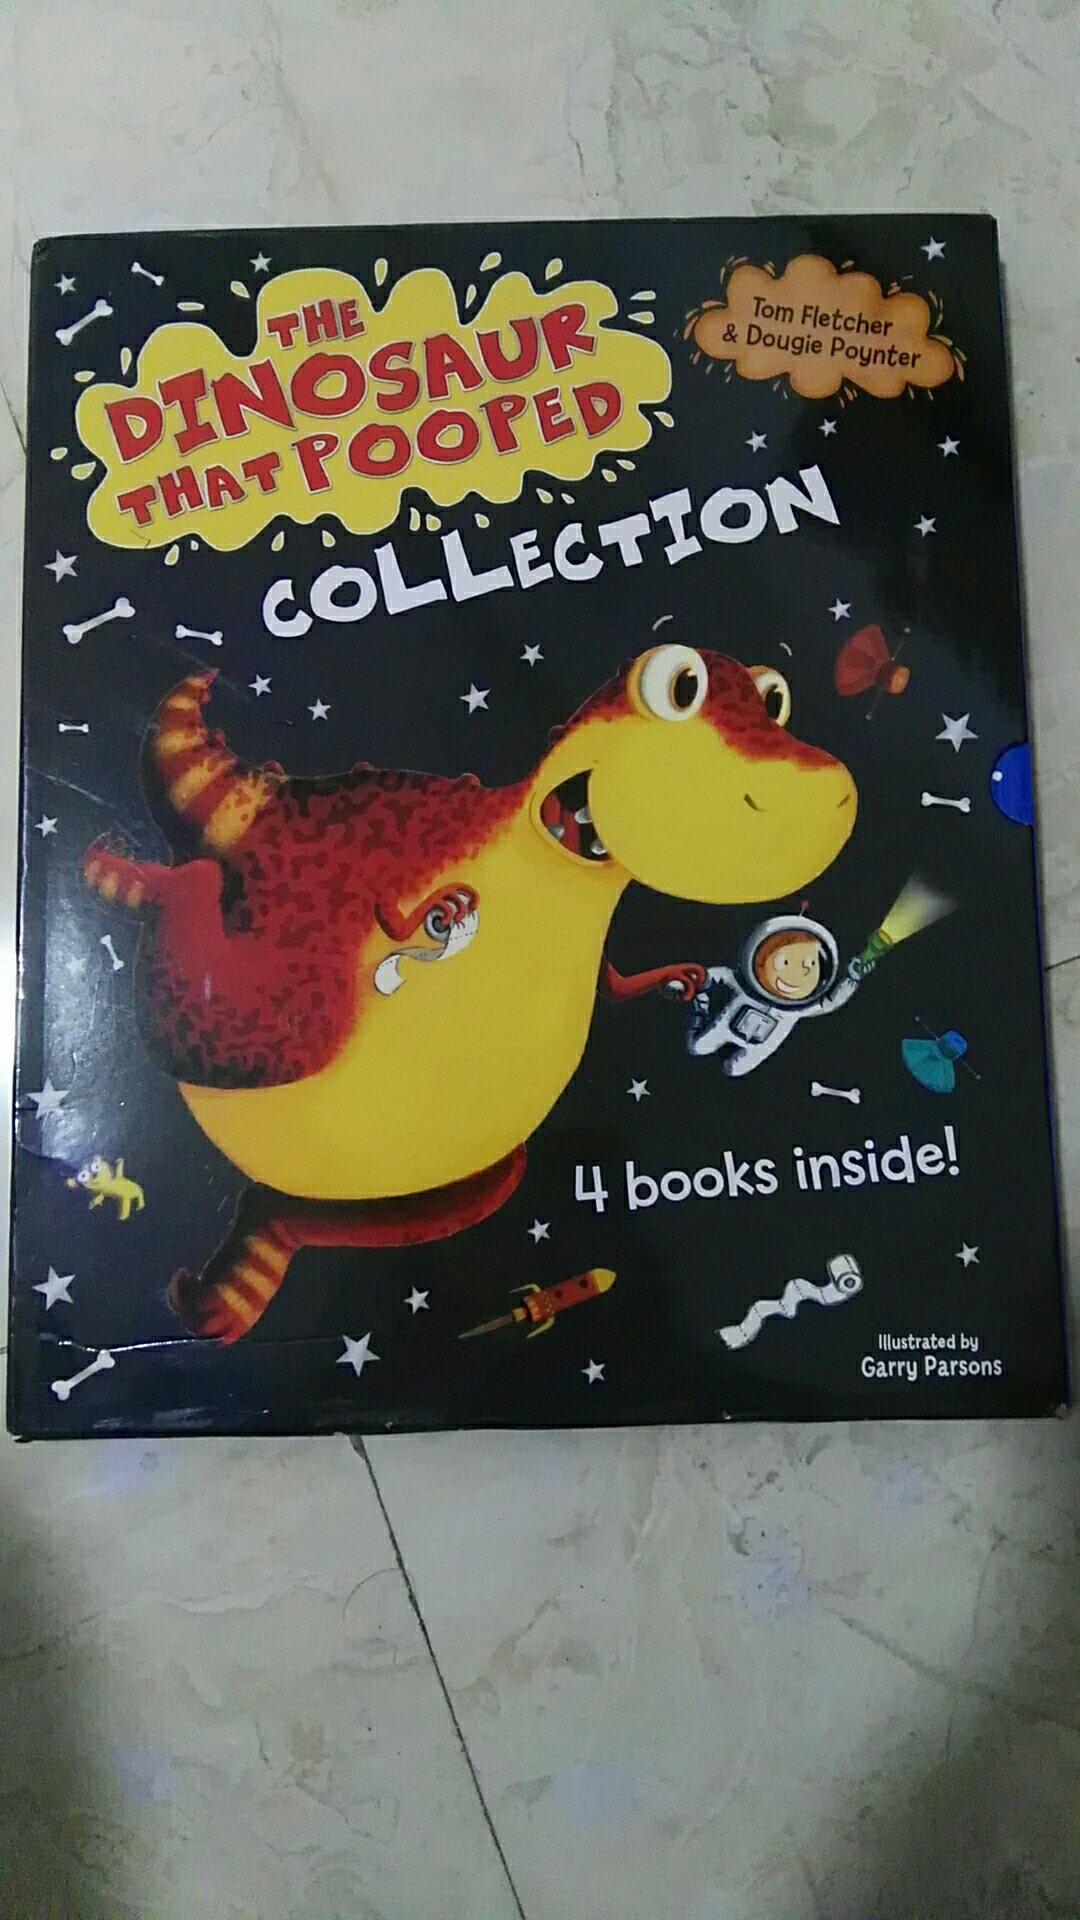 很大的一本书啊，恐龙好萌，只是买超龄了感觉，屯着慢慢看